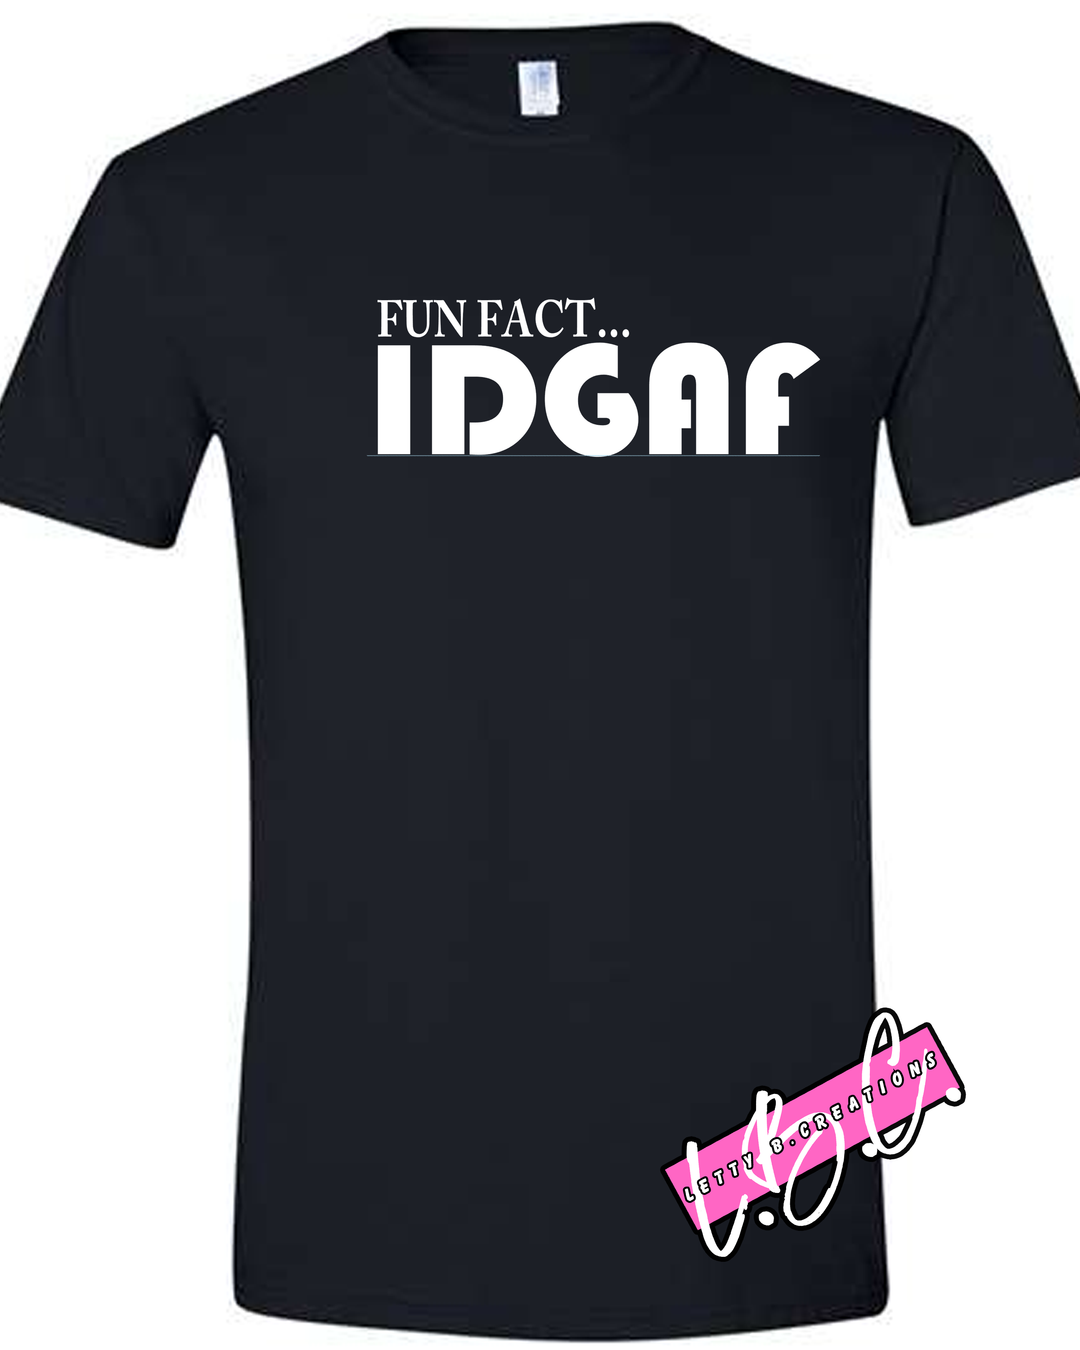 Fun Fact IDGAF graphic tee